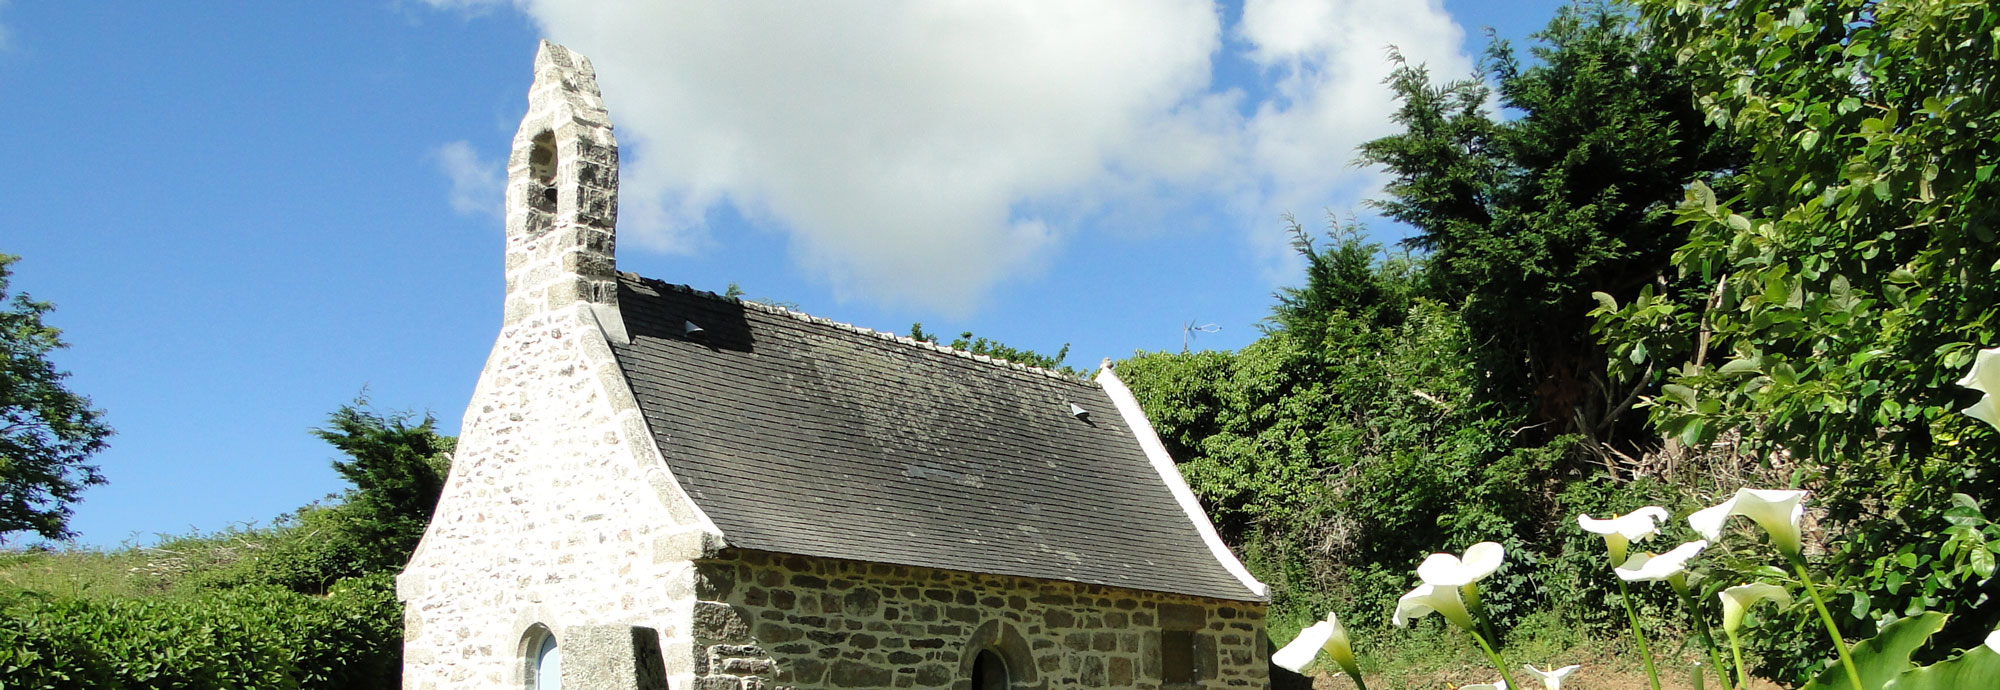 La chapelle Prad paol de Plouguerneau